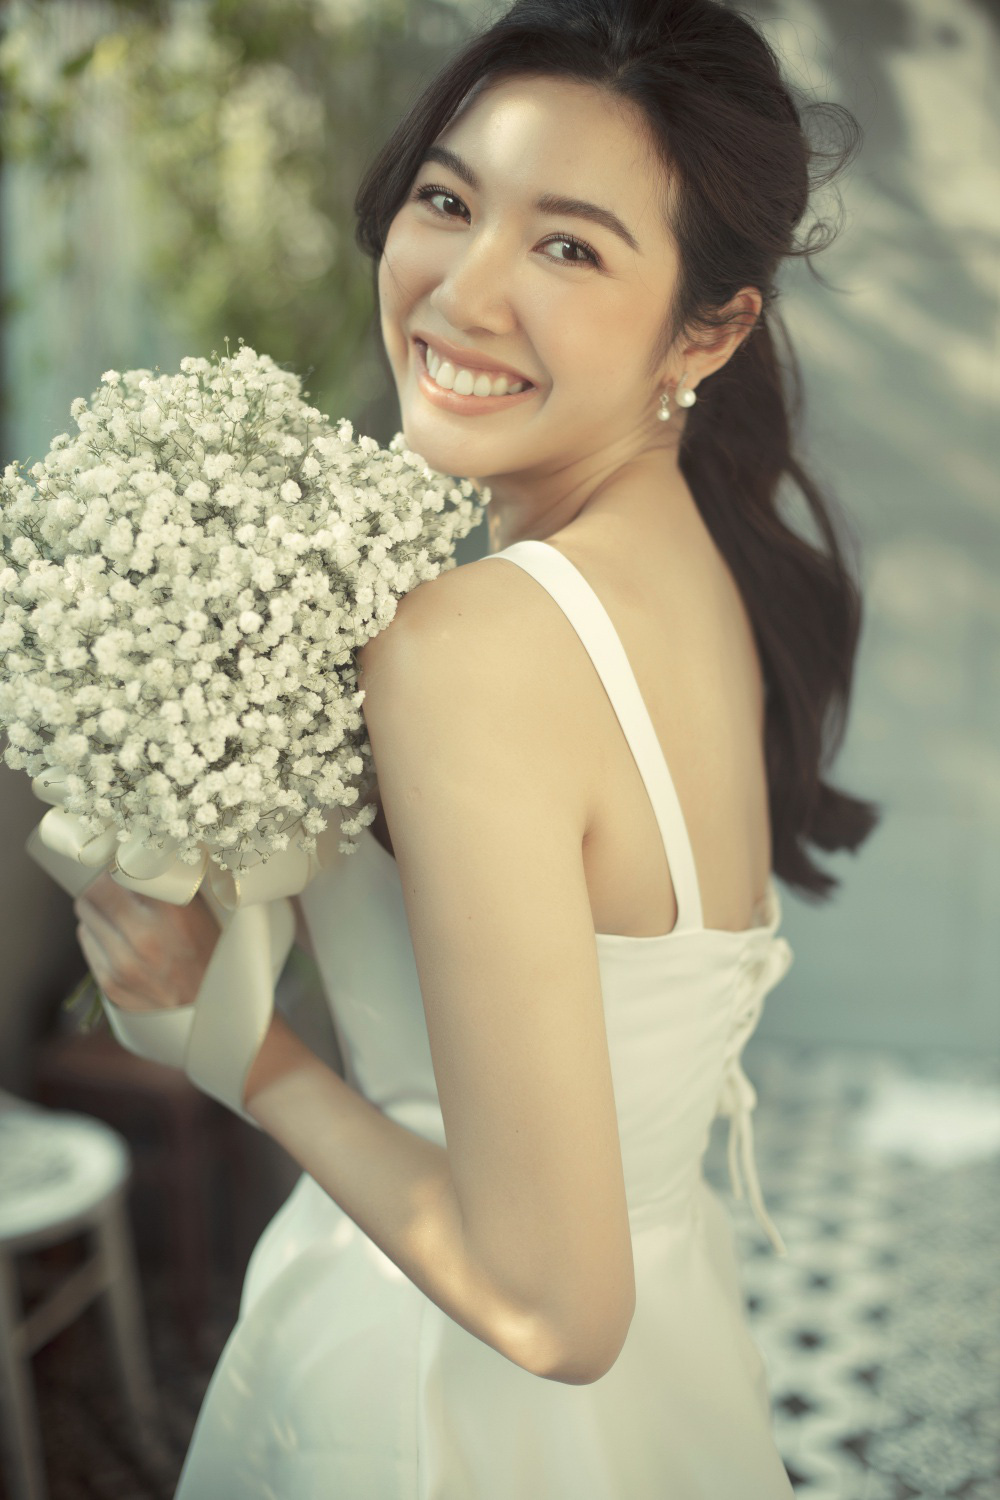 Á hậu Thúy Vân mặc váy cưới xinh đẹp như công chúa, dự định tổ chức tiệc cưới riêng tư trong 2 tháng tới - Ảnh 4.